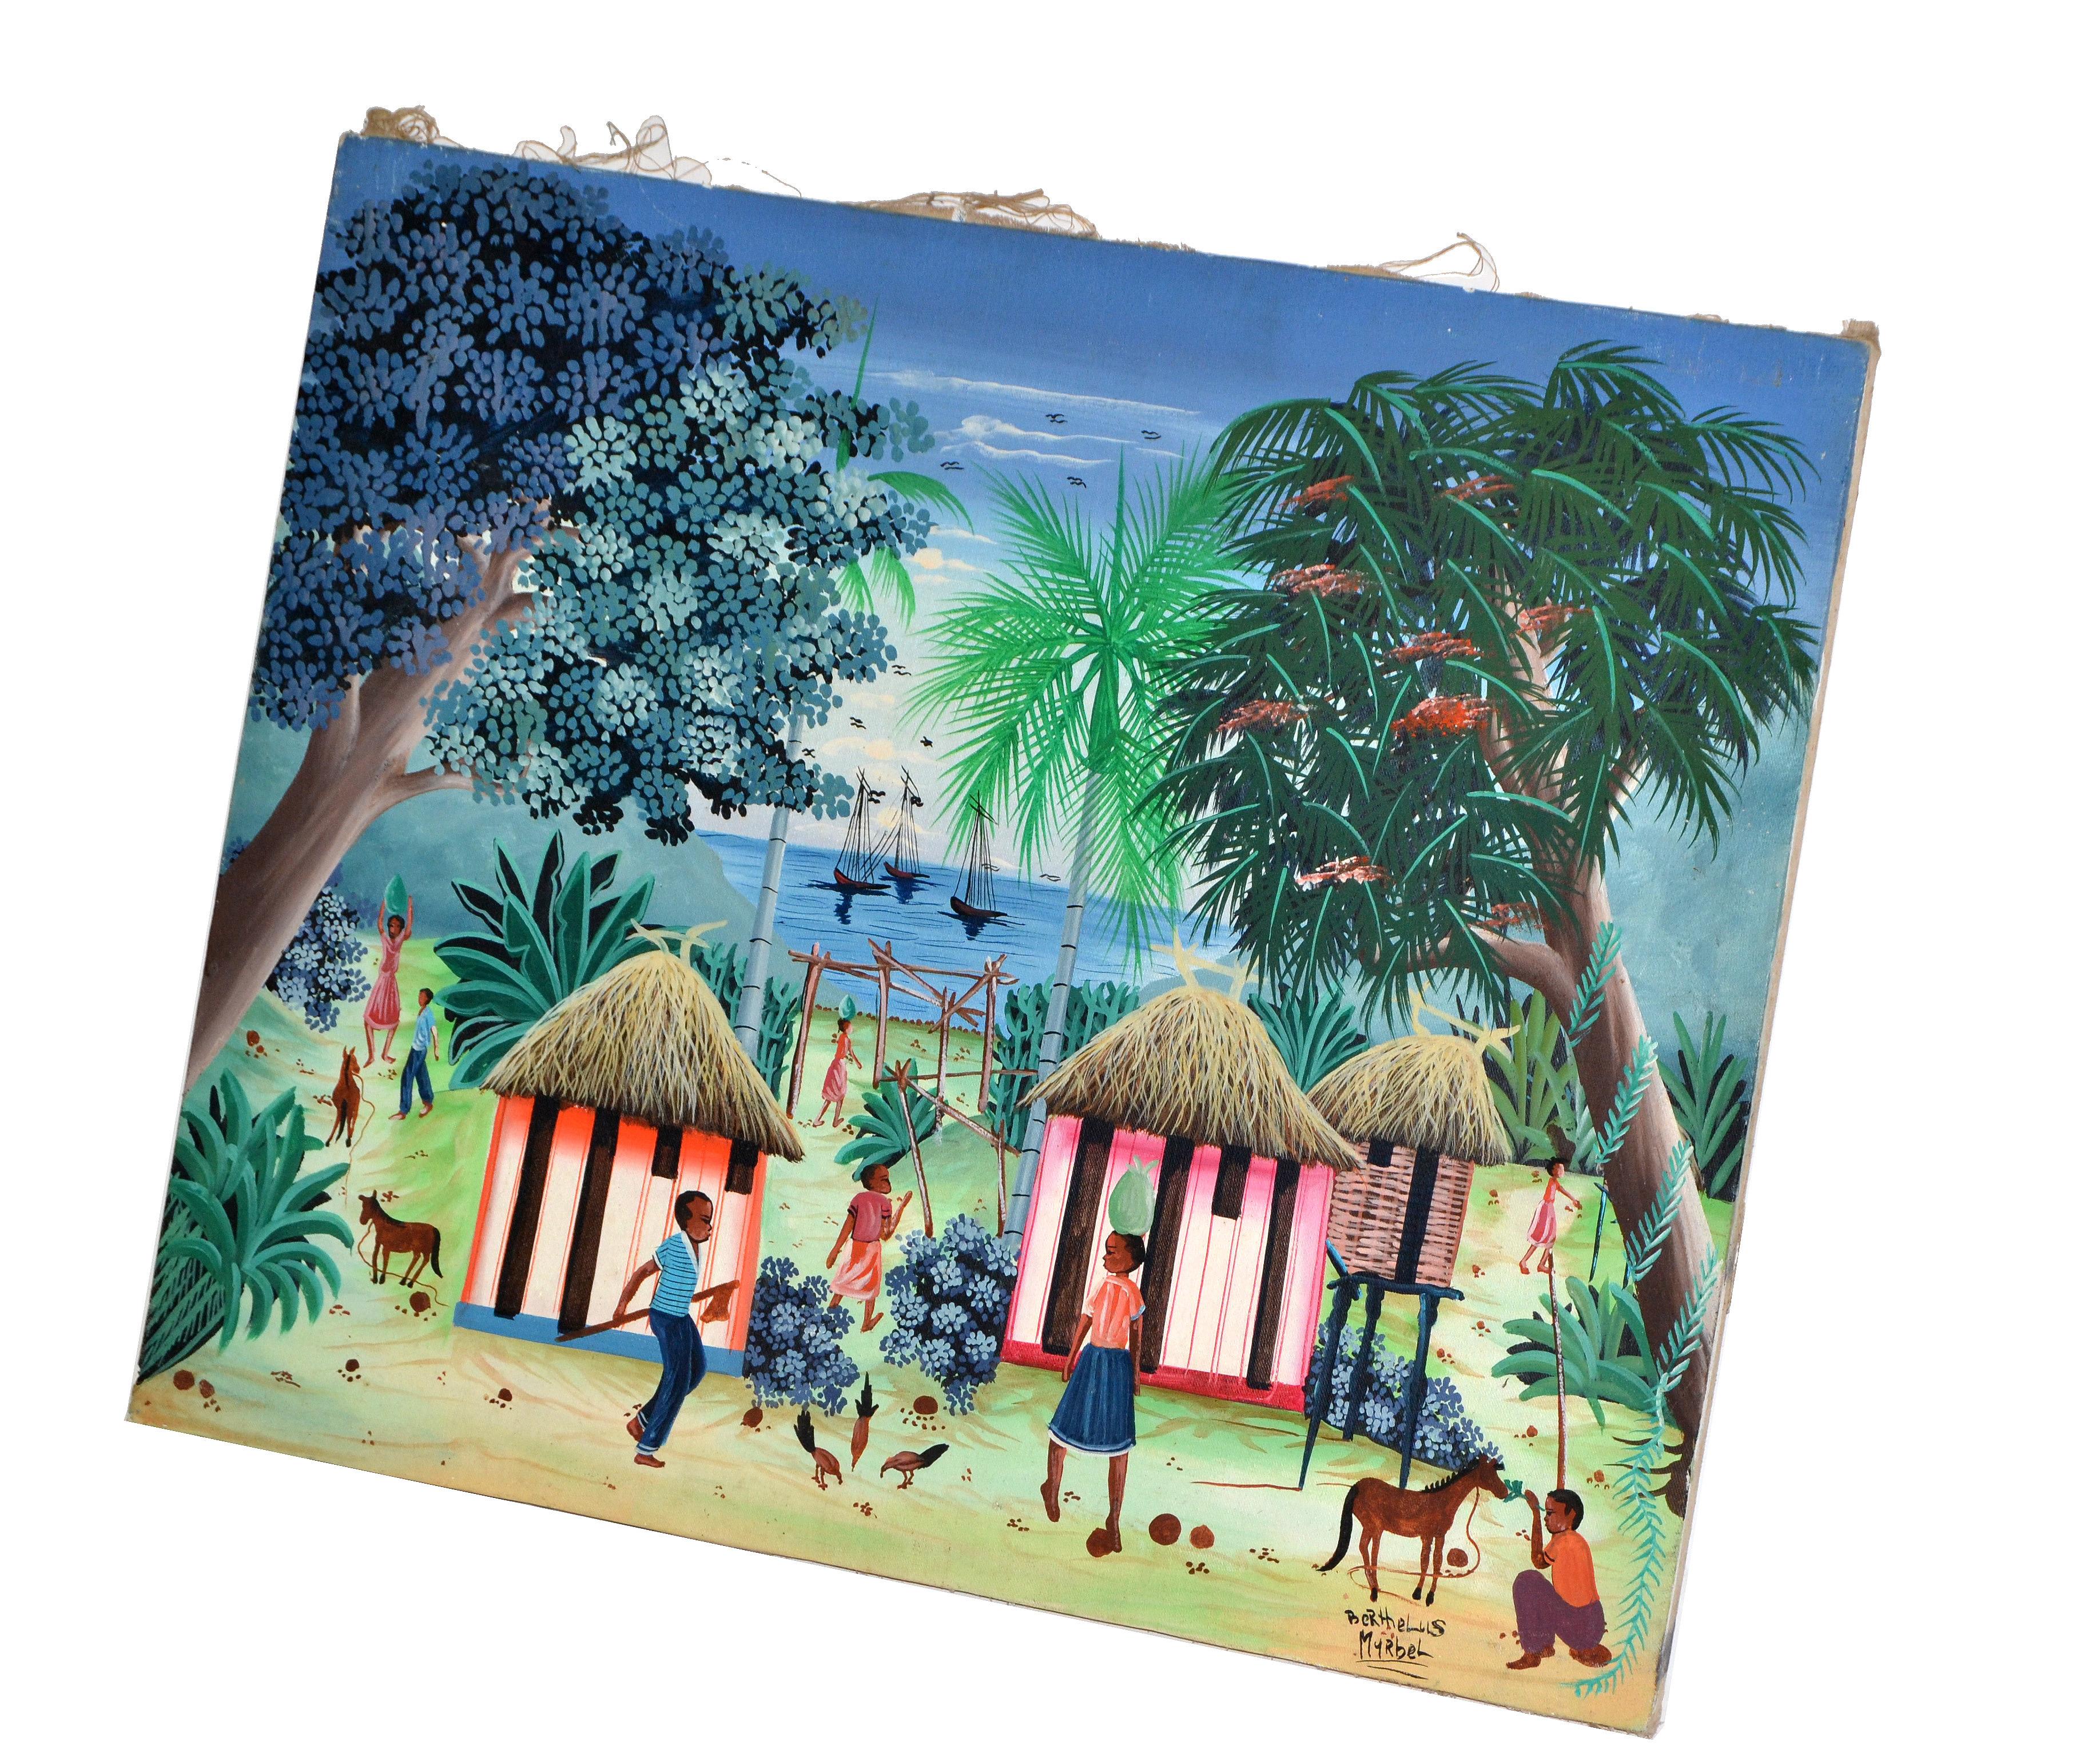 Bunte Vintage-Acryl-Gemälde von Haitian Harbor Scene von 3 Hütten und Segelboote auf Leinwand.
Signiert vom Künstler und hergestellt in Haiti in den 1970er Jahren. 
Guter Vintage-Zustand mit Gebrauchsspuren.
 